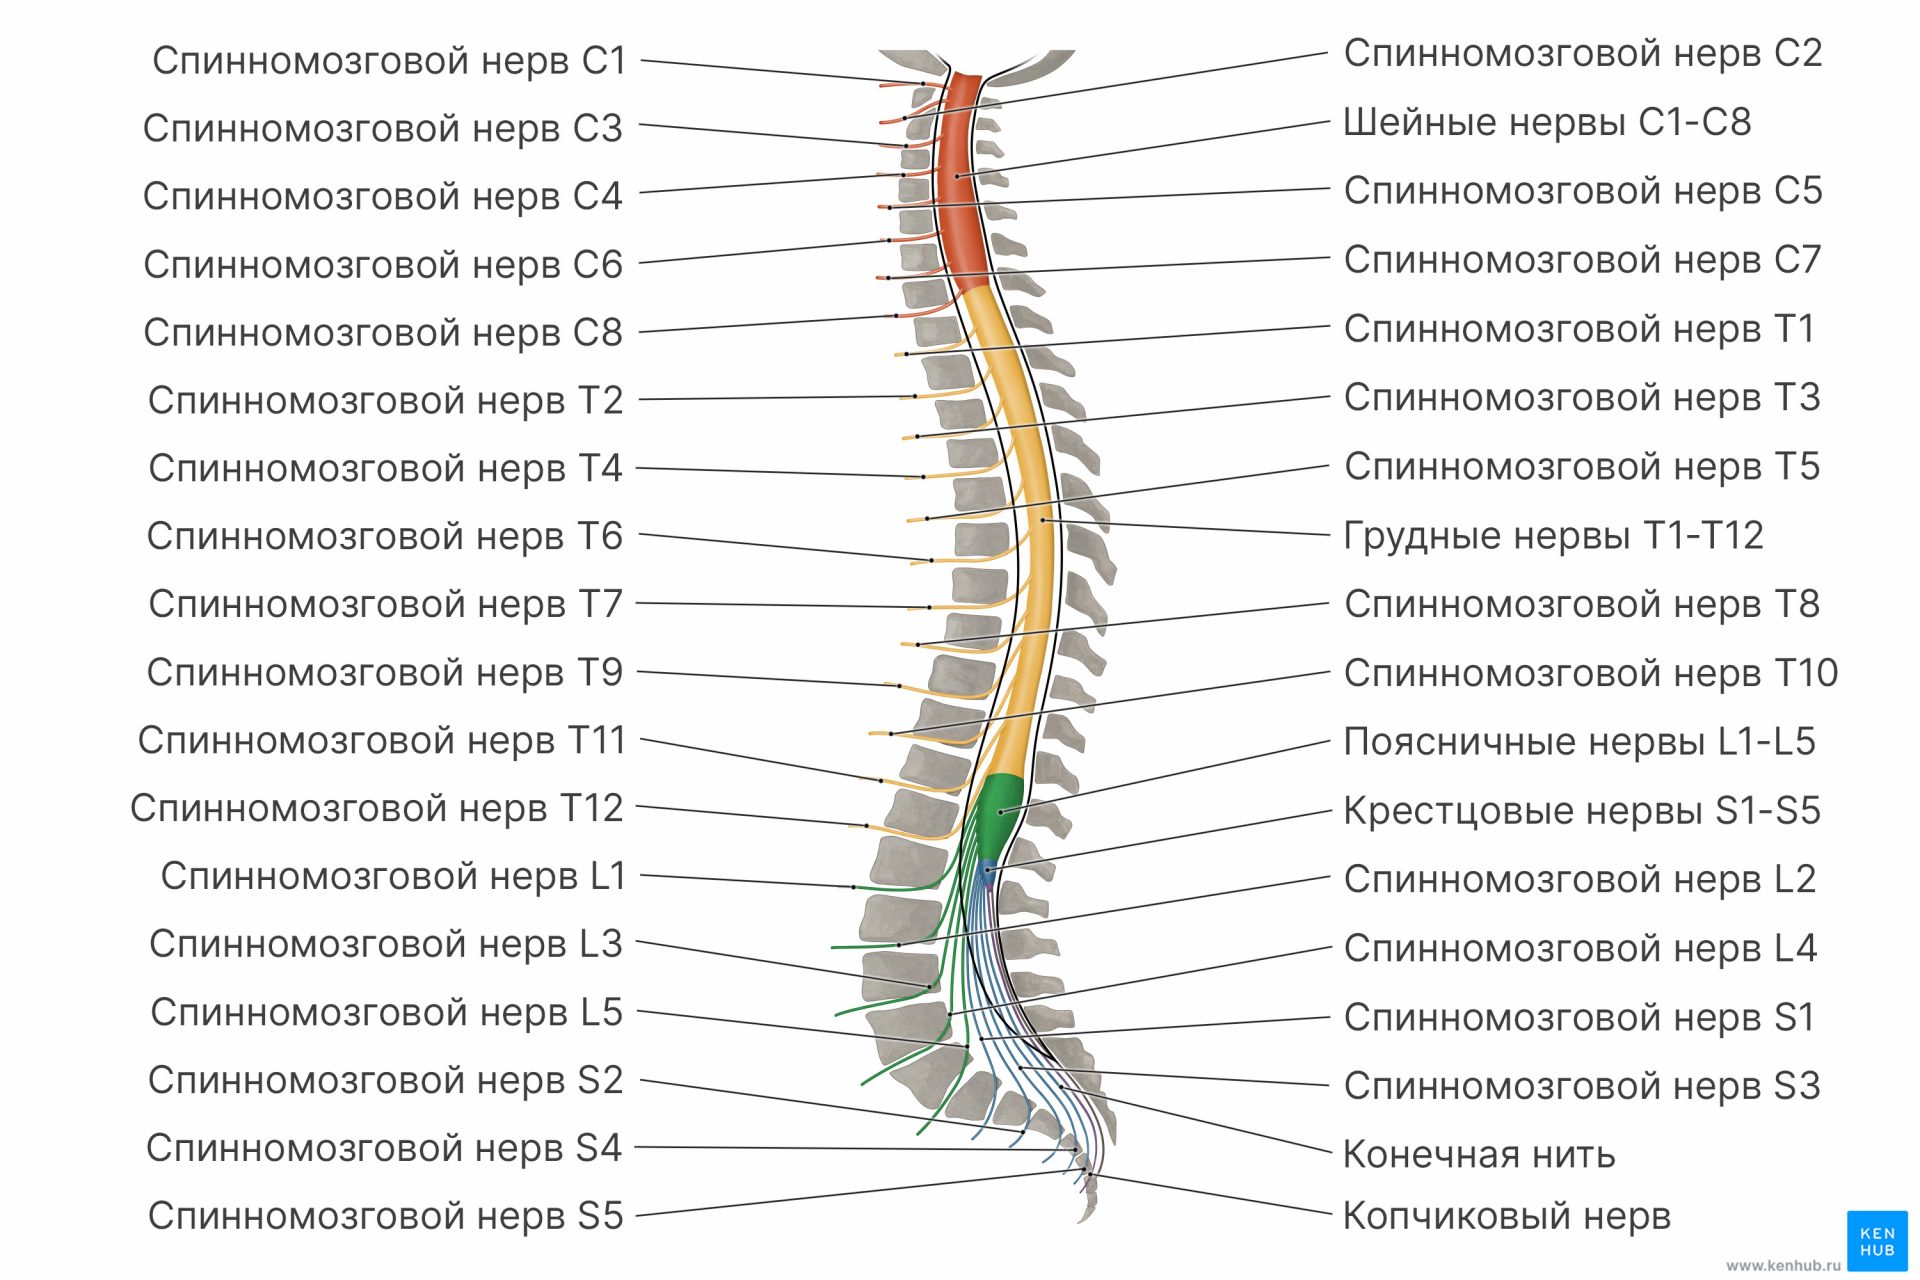 Спинномозговые нервы (диаграмма)